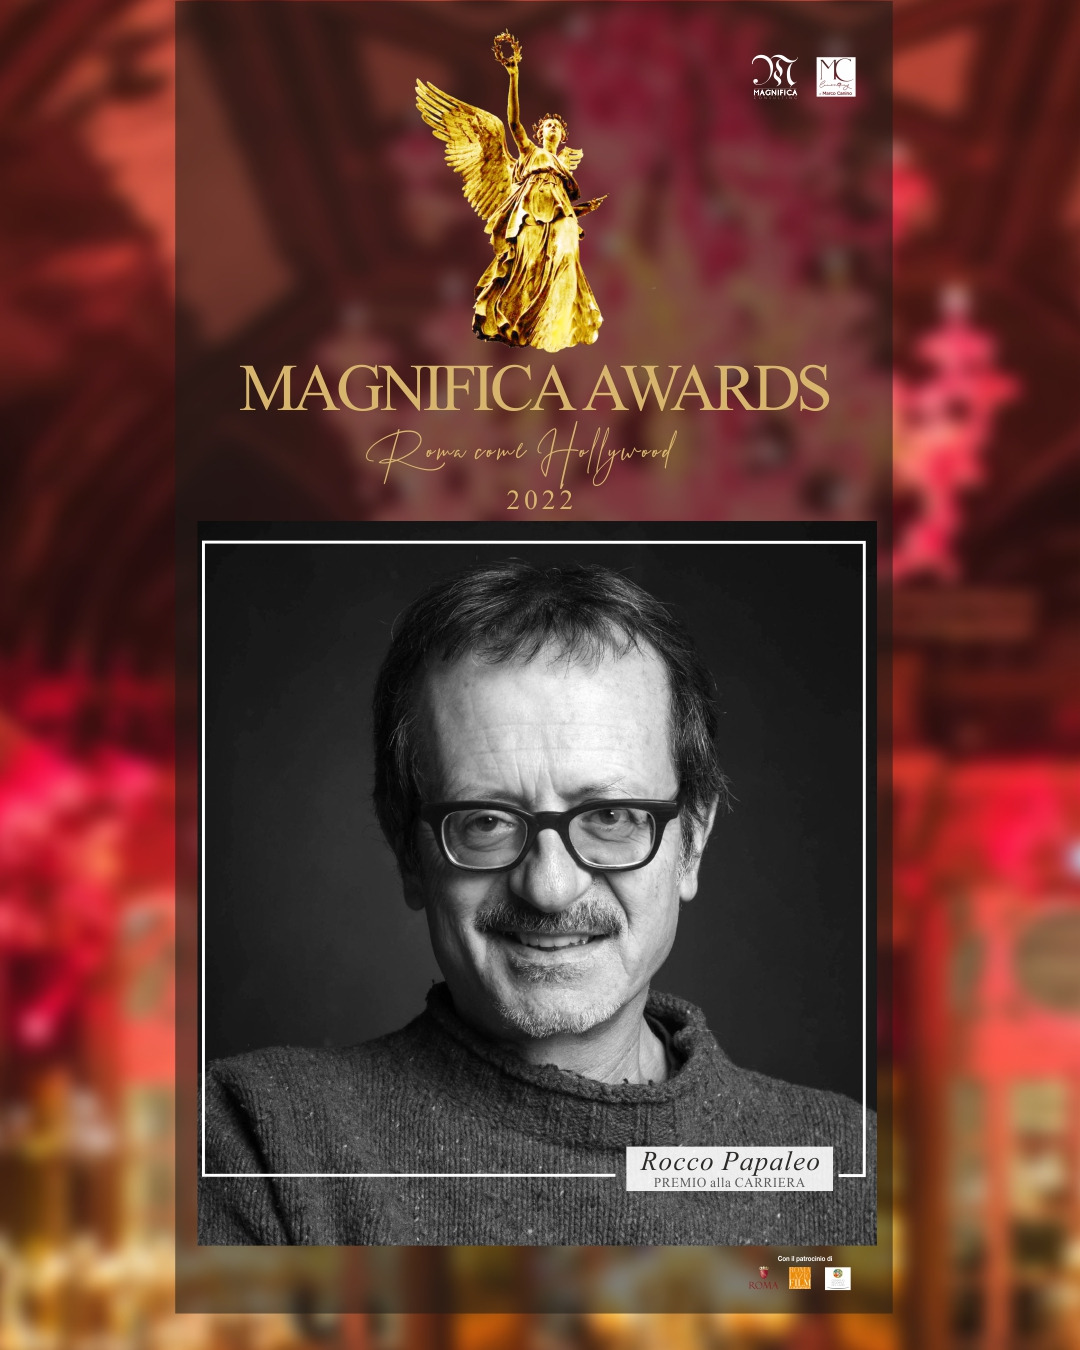 Rocco Papaleo tra i premiati della prima edizione dei Magnifica Awards “Roma come Hollywood”